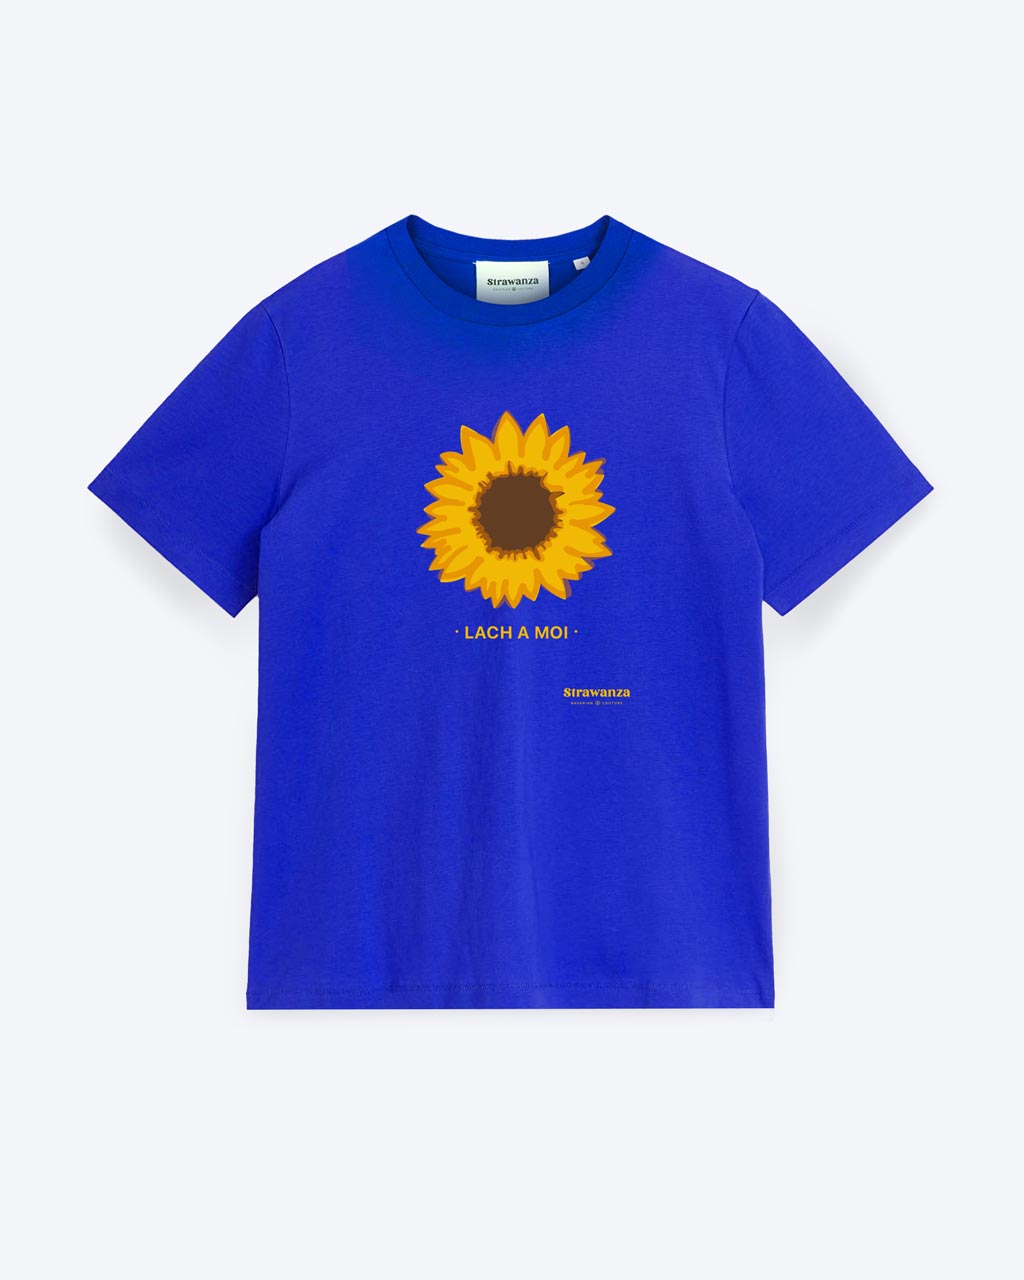 Ein blaues T-Shirt mit einer Sonnenblume als Motiv und darunter ein gelber 